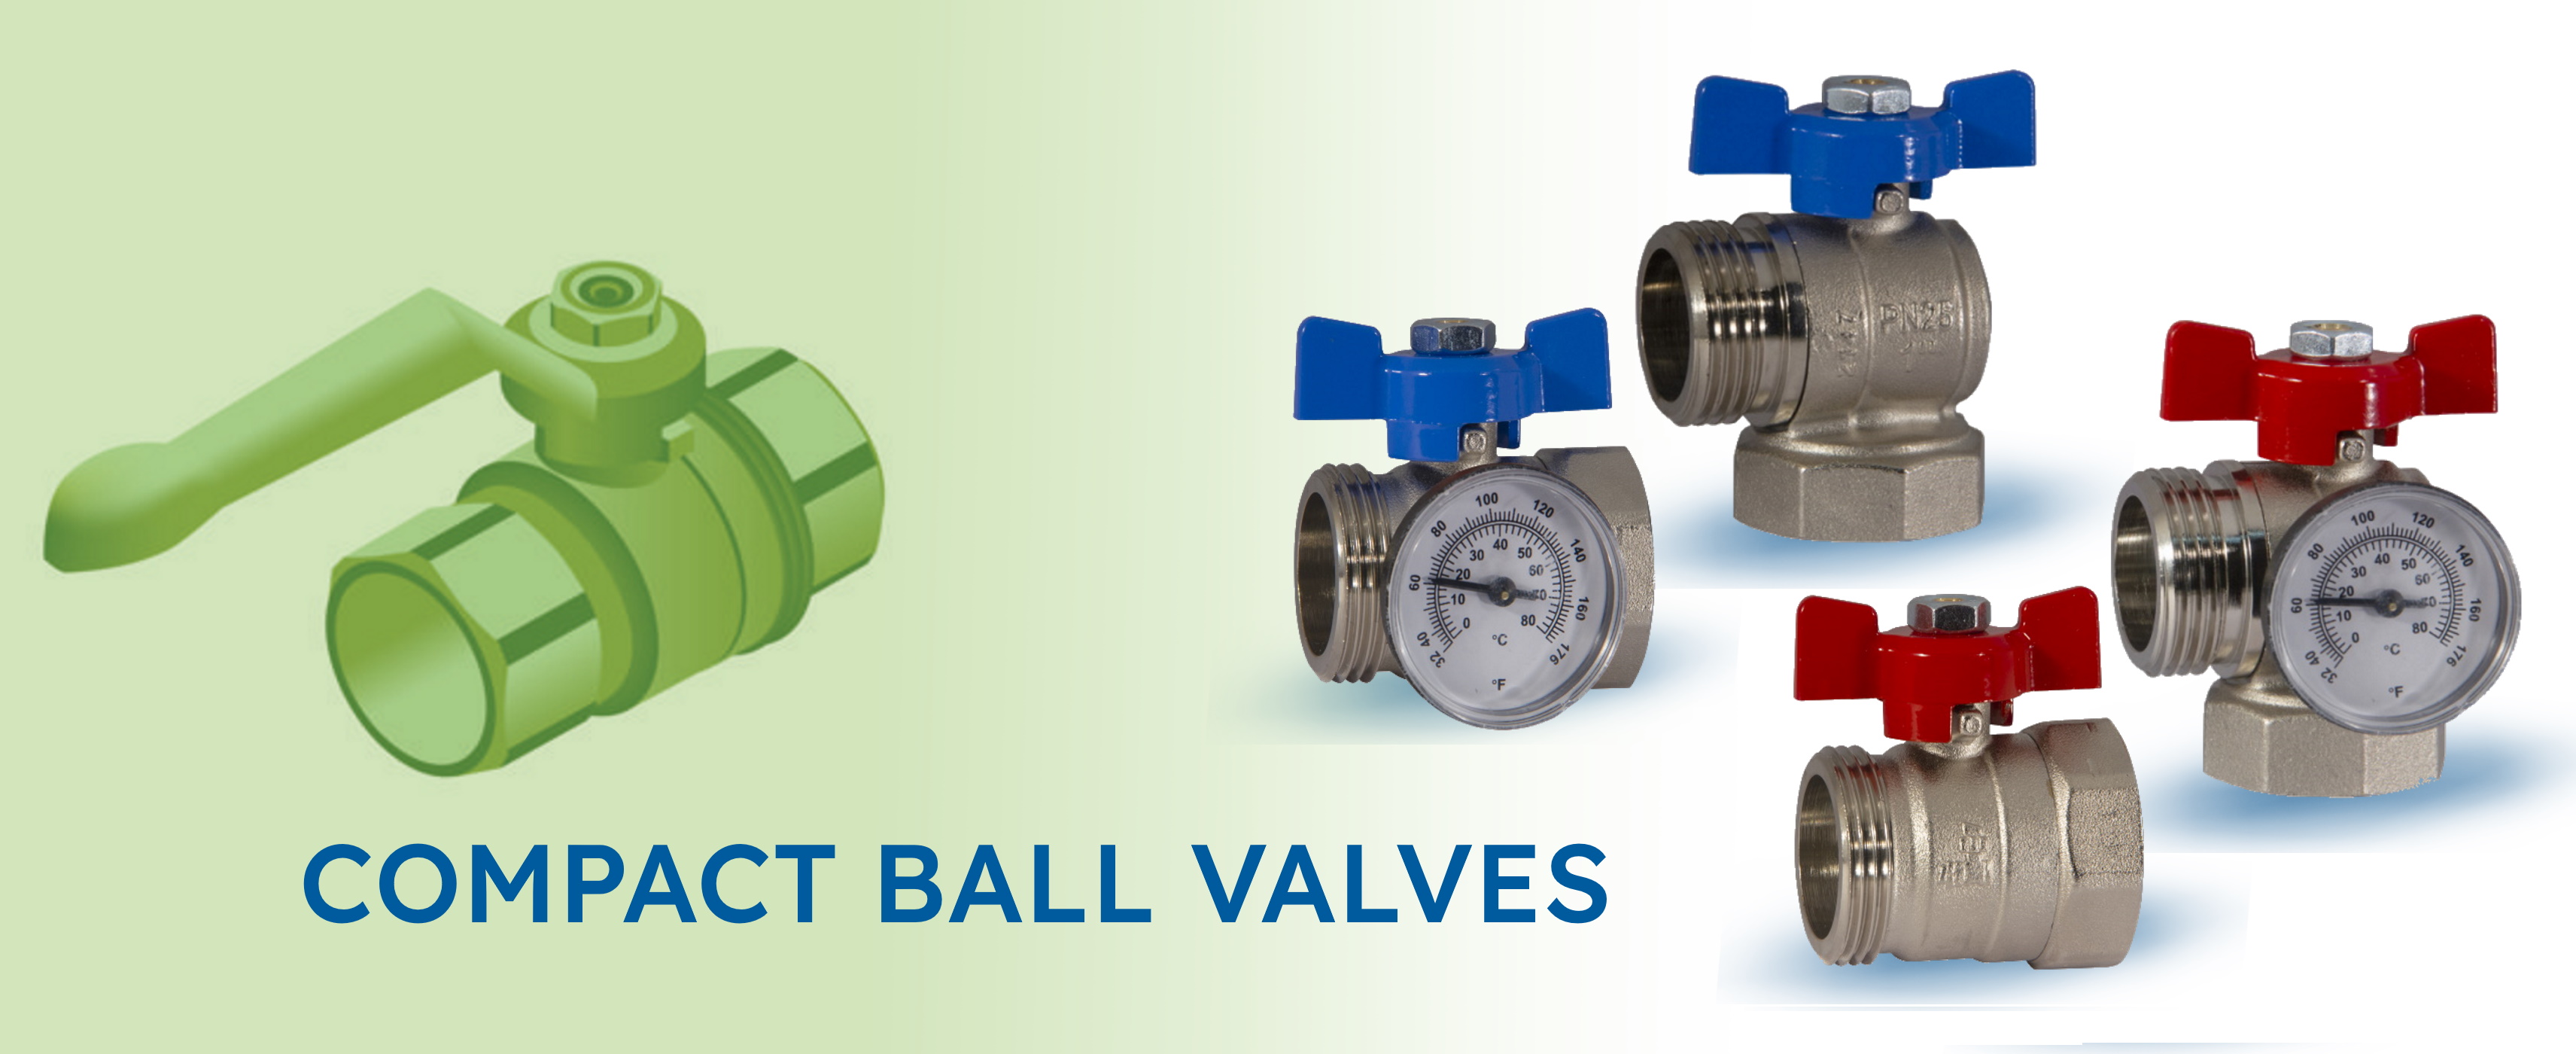 Compact ball valves